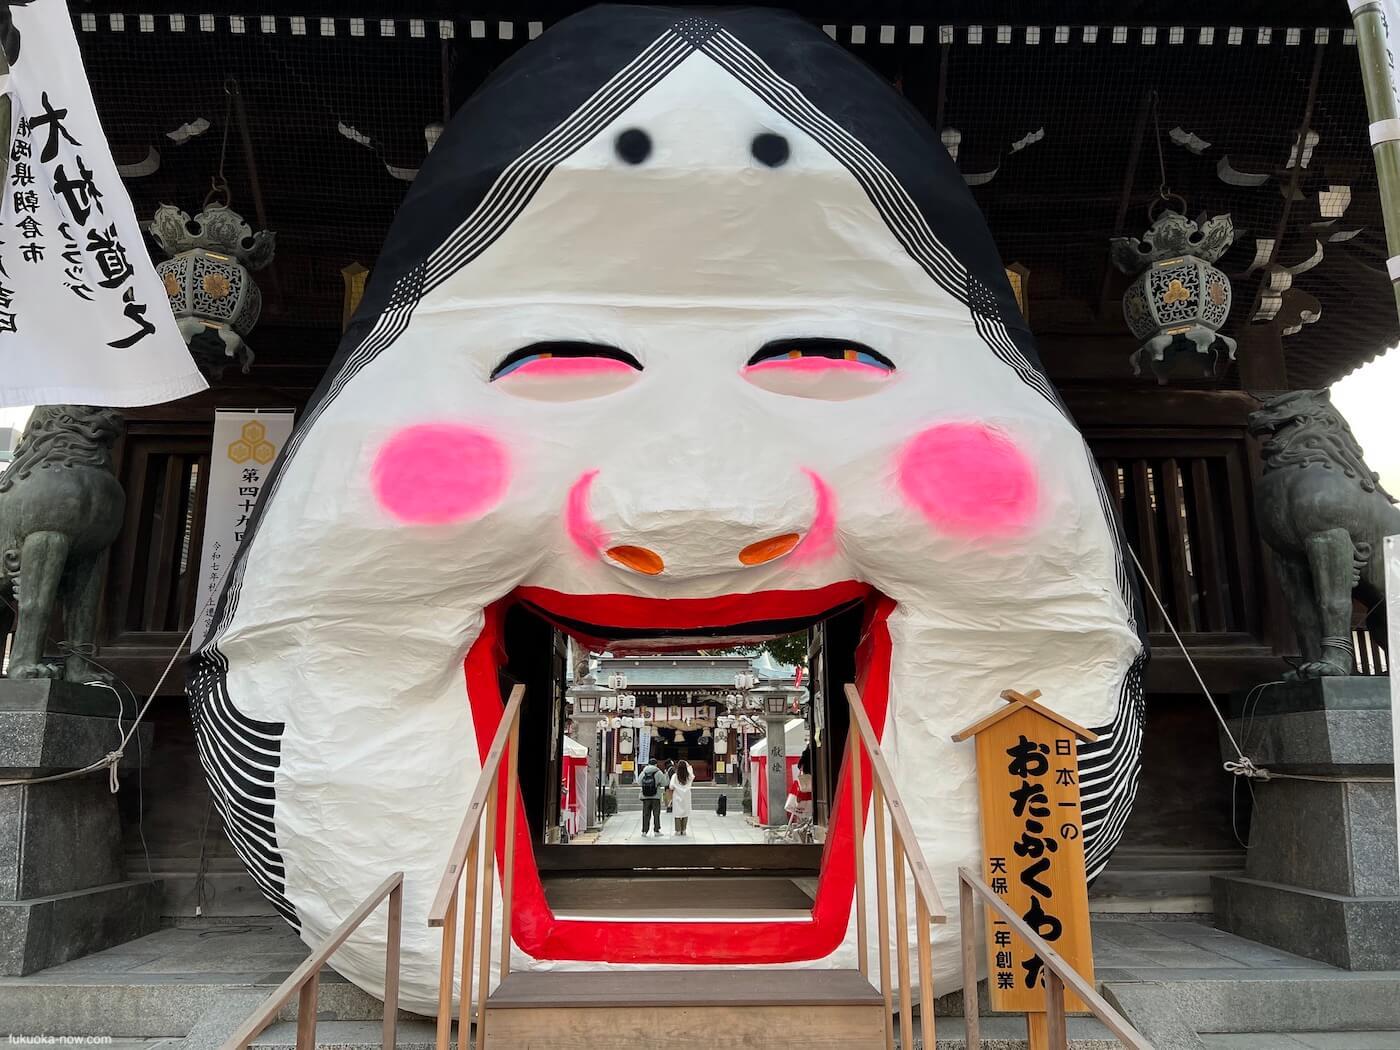 Setsubun at Kushida Shrine, 櫛田神社の節分祭